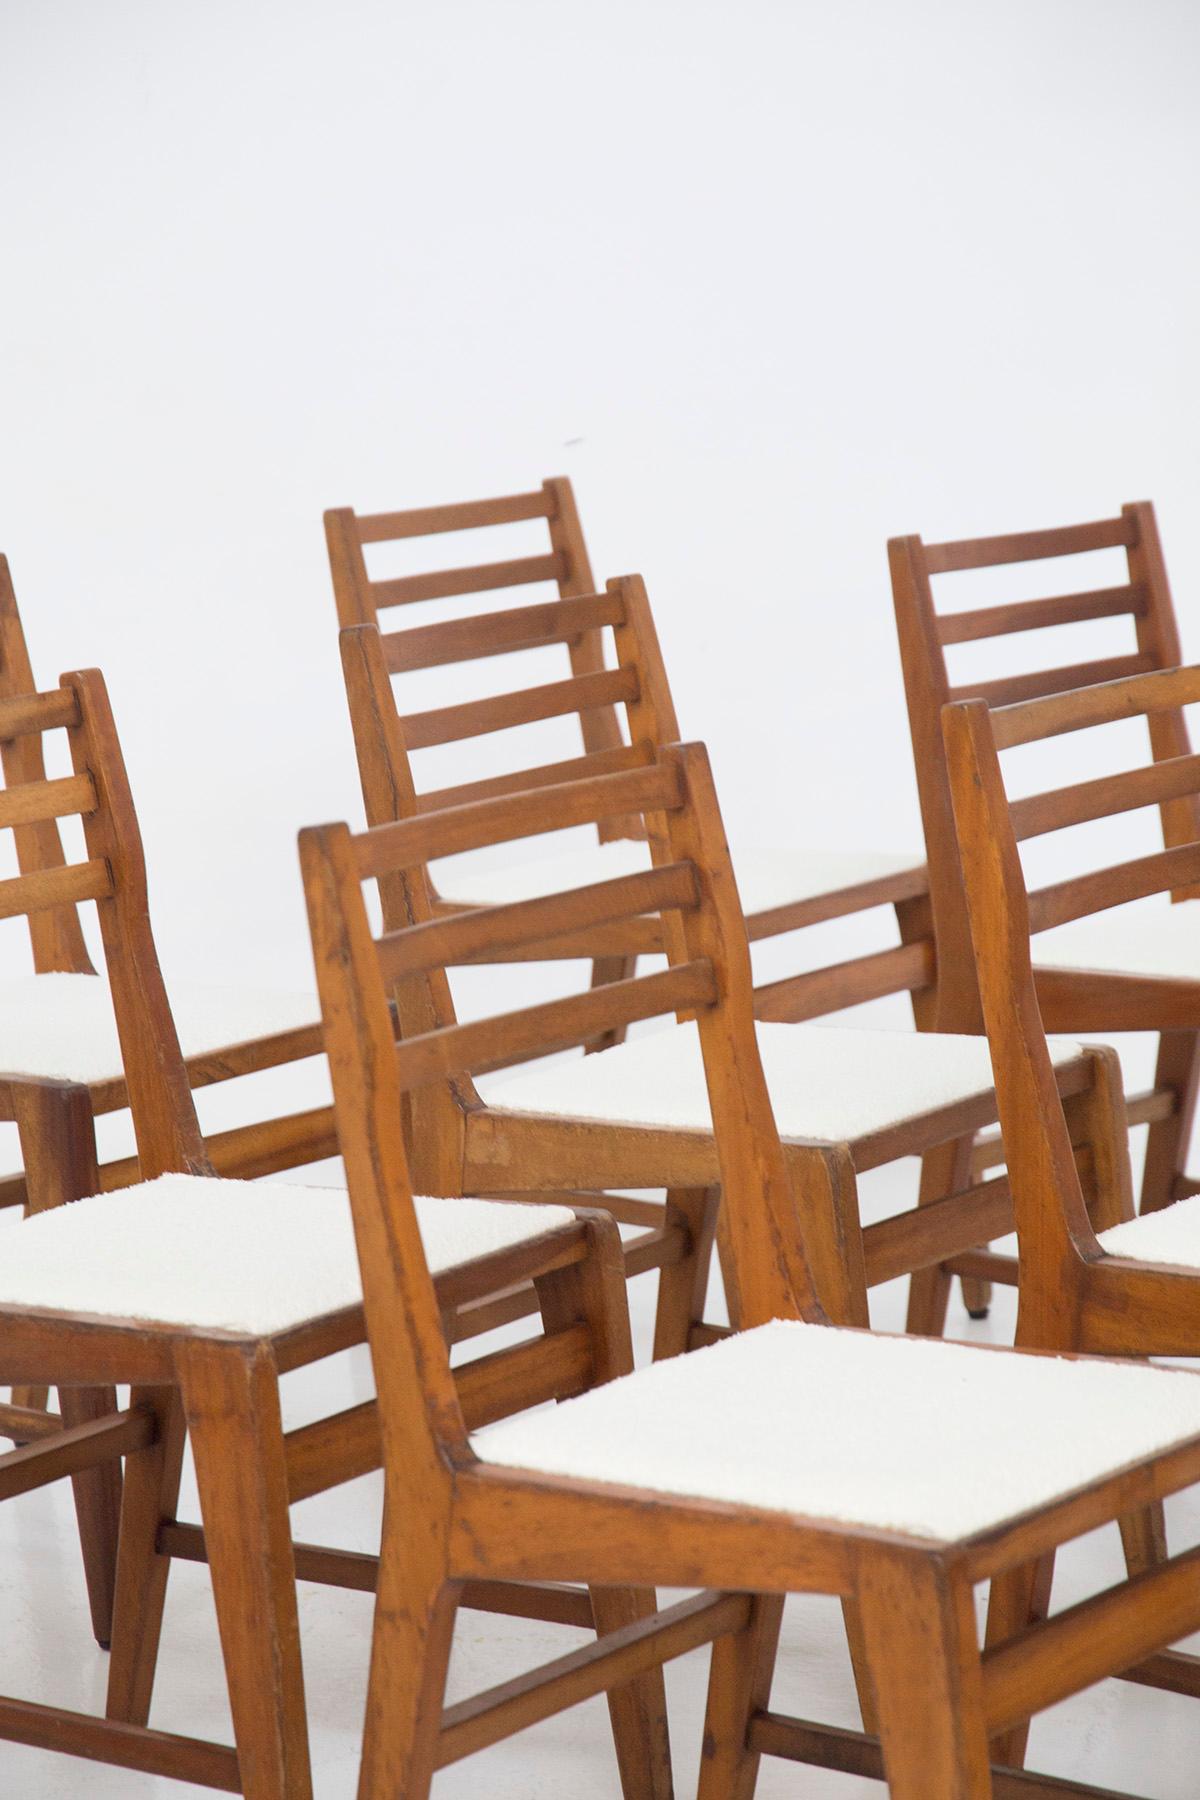 Schönes Set bestehend aus 12 Stühlen, entworfen von der Gruppe von Designern und Architekten B.B.P.R. in den 1950er Jahren, feine italienische Herstellung.
Die Stühle haben eine sehr einfache Holzstruktur mit starren Linien, die durch die